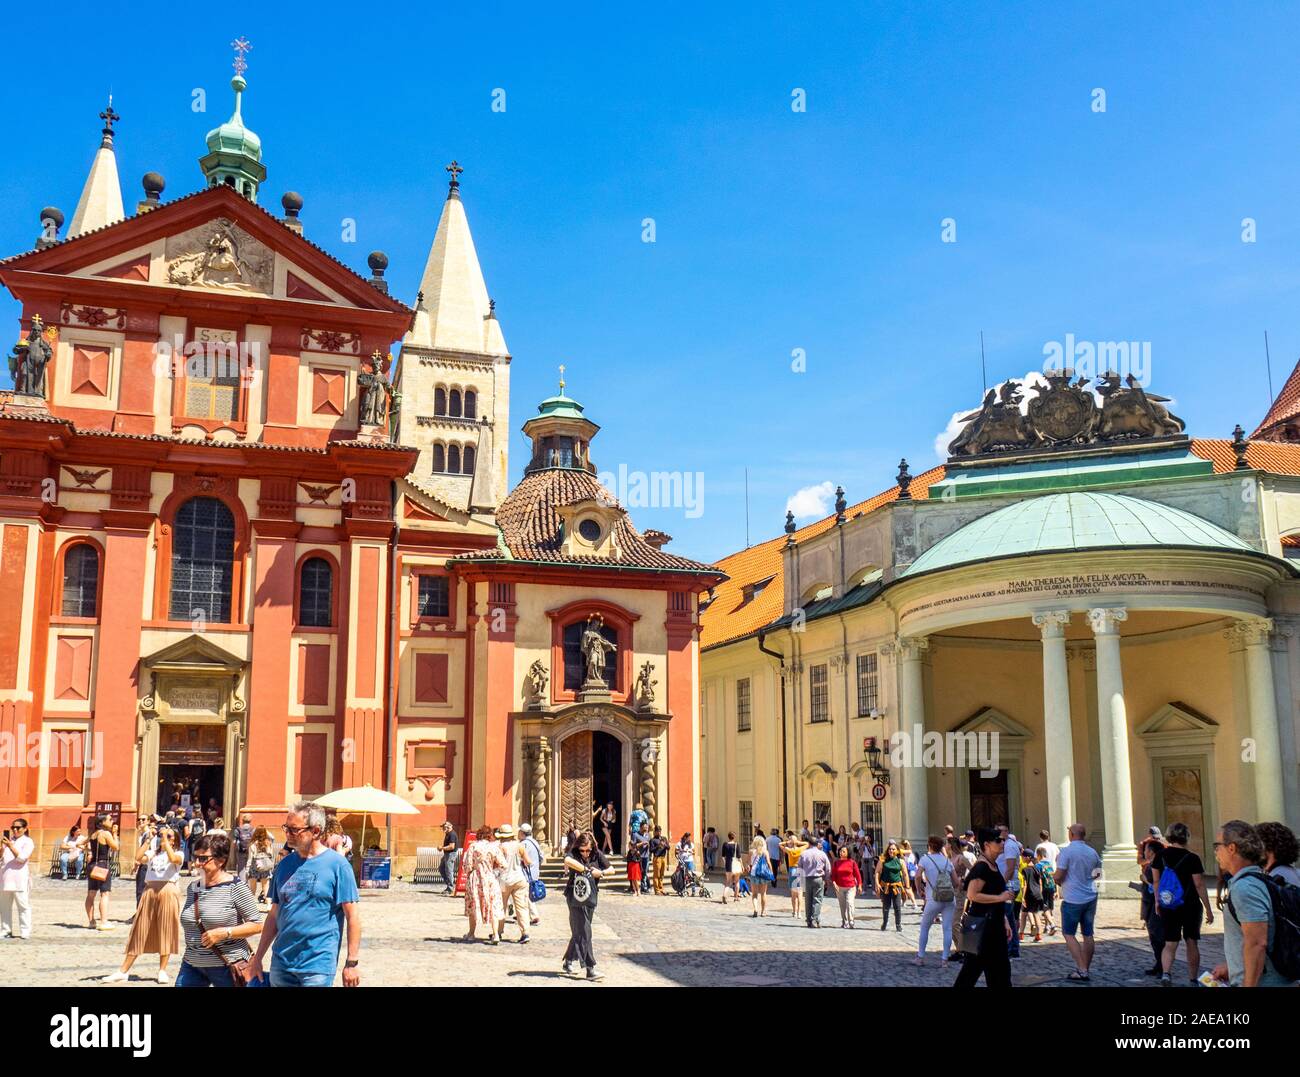 La basilique Saint-Georges et l'impératrice Maria Theresa entrée à l'institution thérésienne des Noble Dames place Saint-Georges République tchèque de Prague. Banque D'Images